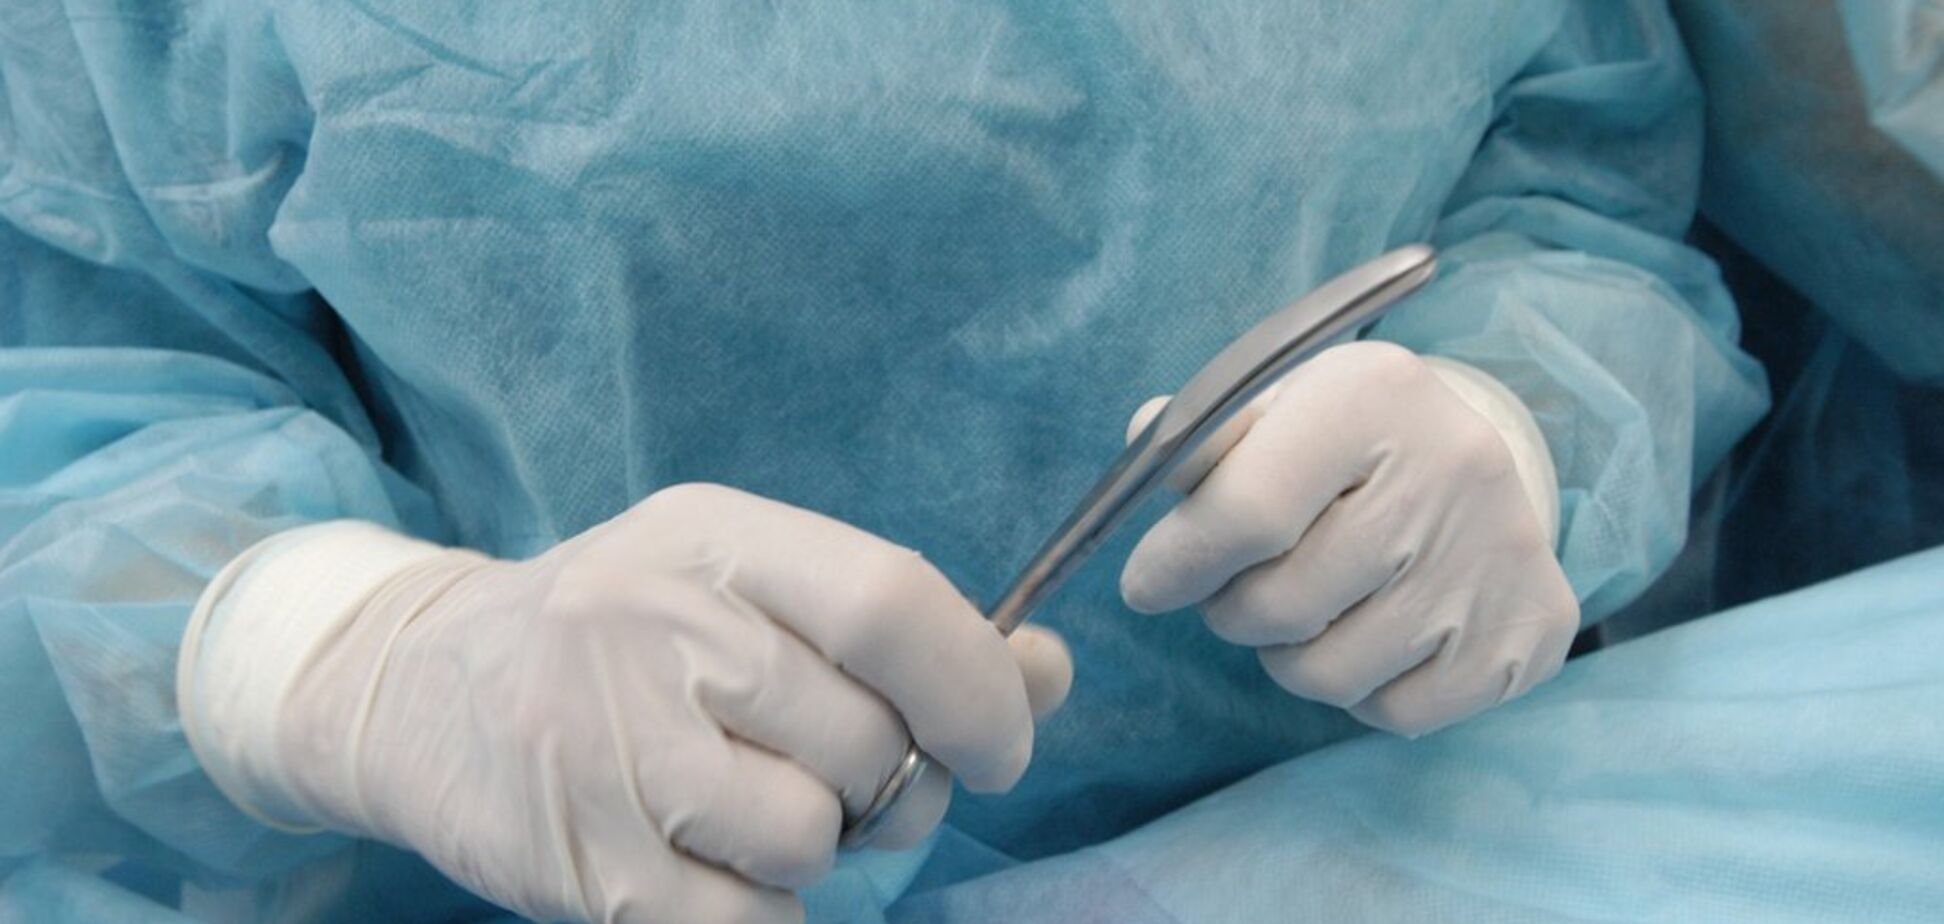 У 10-летней девочки вырезали двухкилограммовую опухоль с зубами внутри